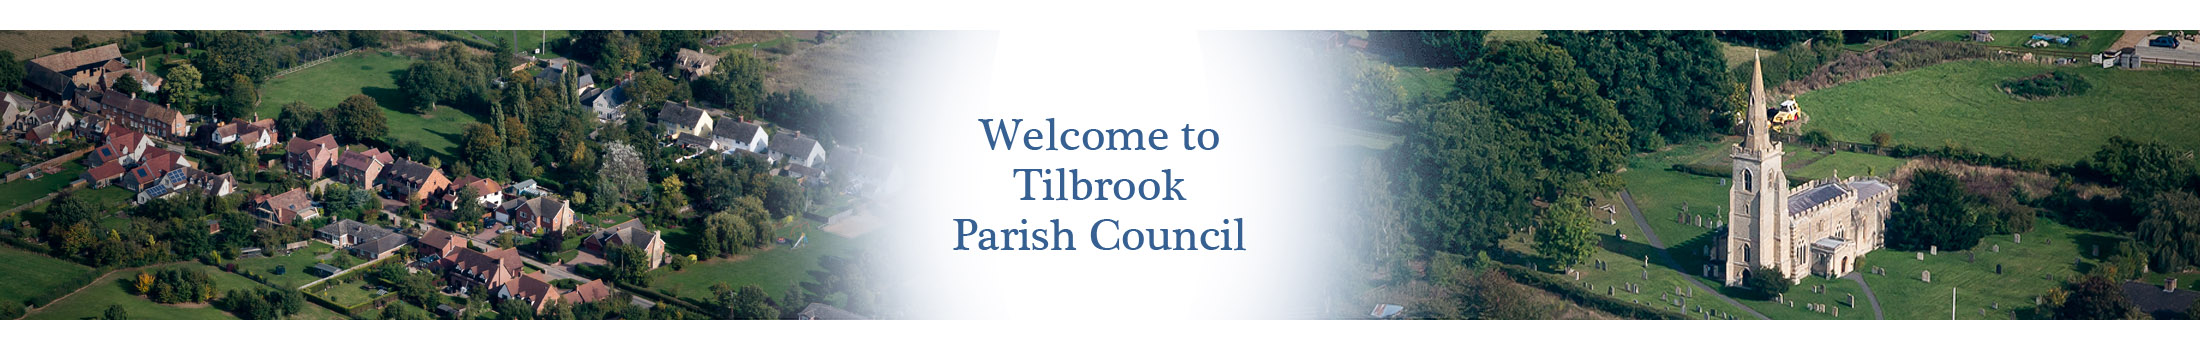 Header Image for Tilbrook Parish Council 